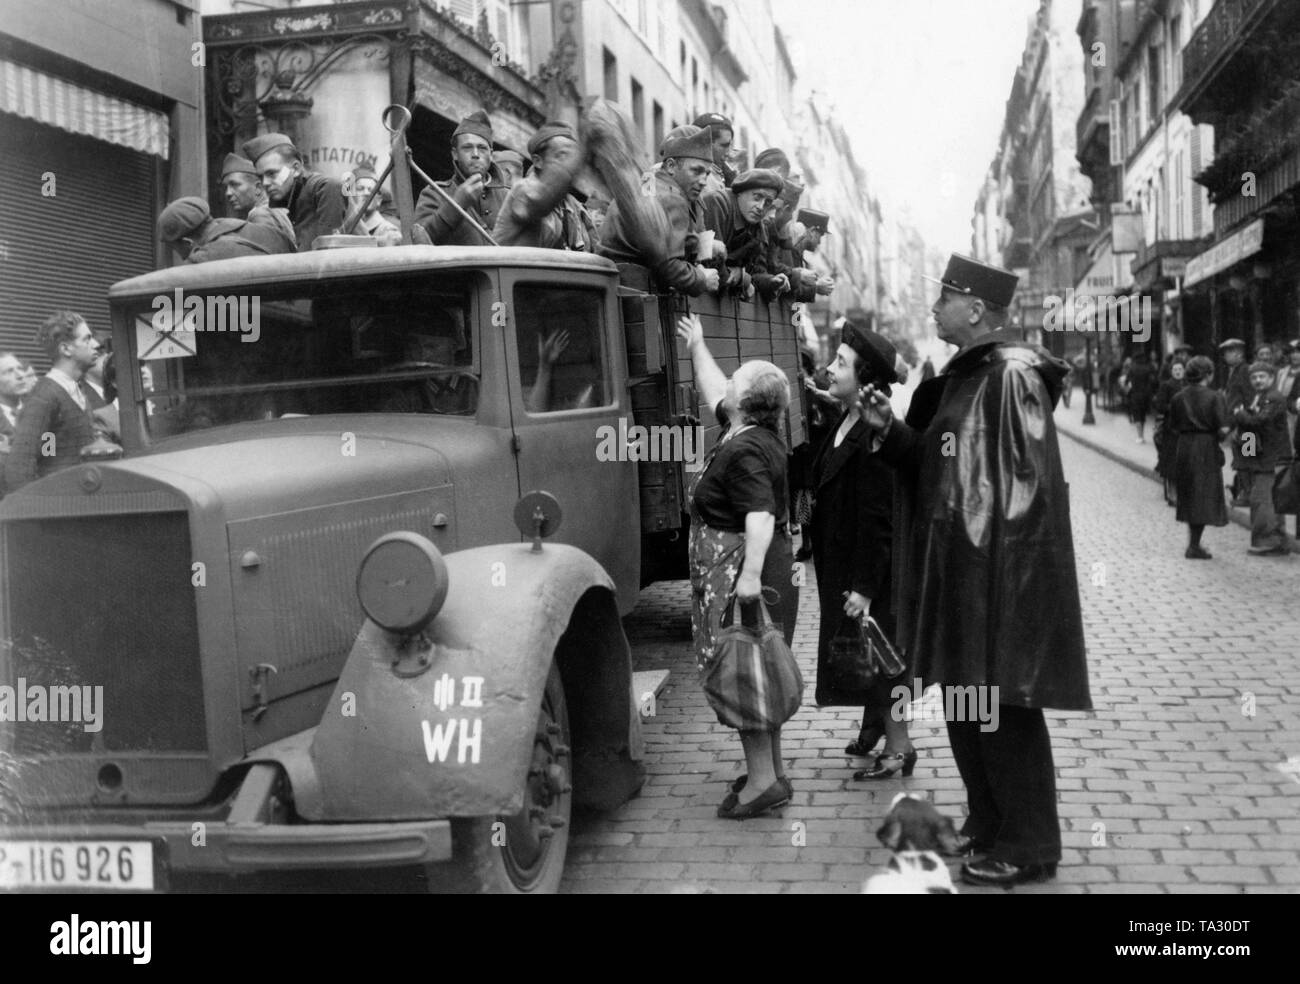 Un camion avec des soldats français dans la rue des Martyrs à Paris. Les soldats sont entraînés dans un camion allemand par Paris, qui s'arrête ici, ainsi que les Parisiens peuvent fournir leurs compatriotes. Banque D'Images